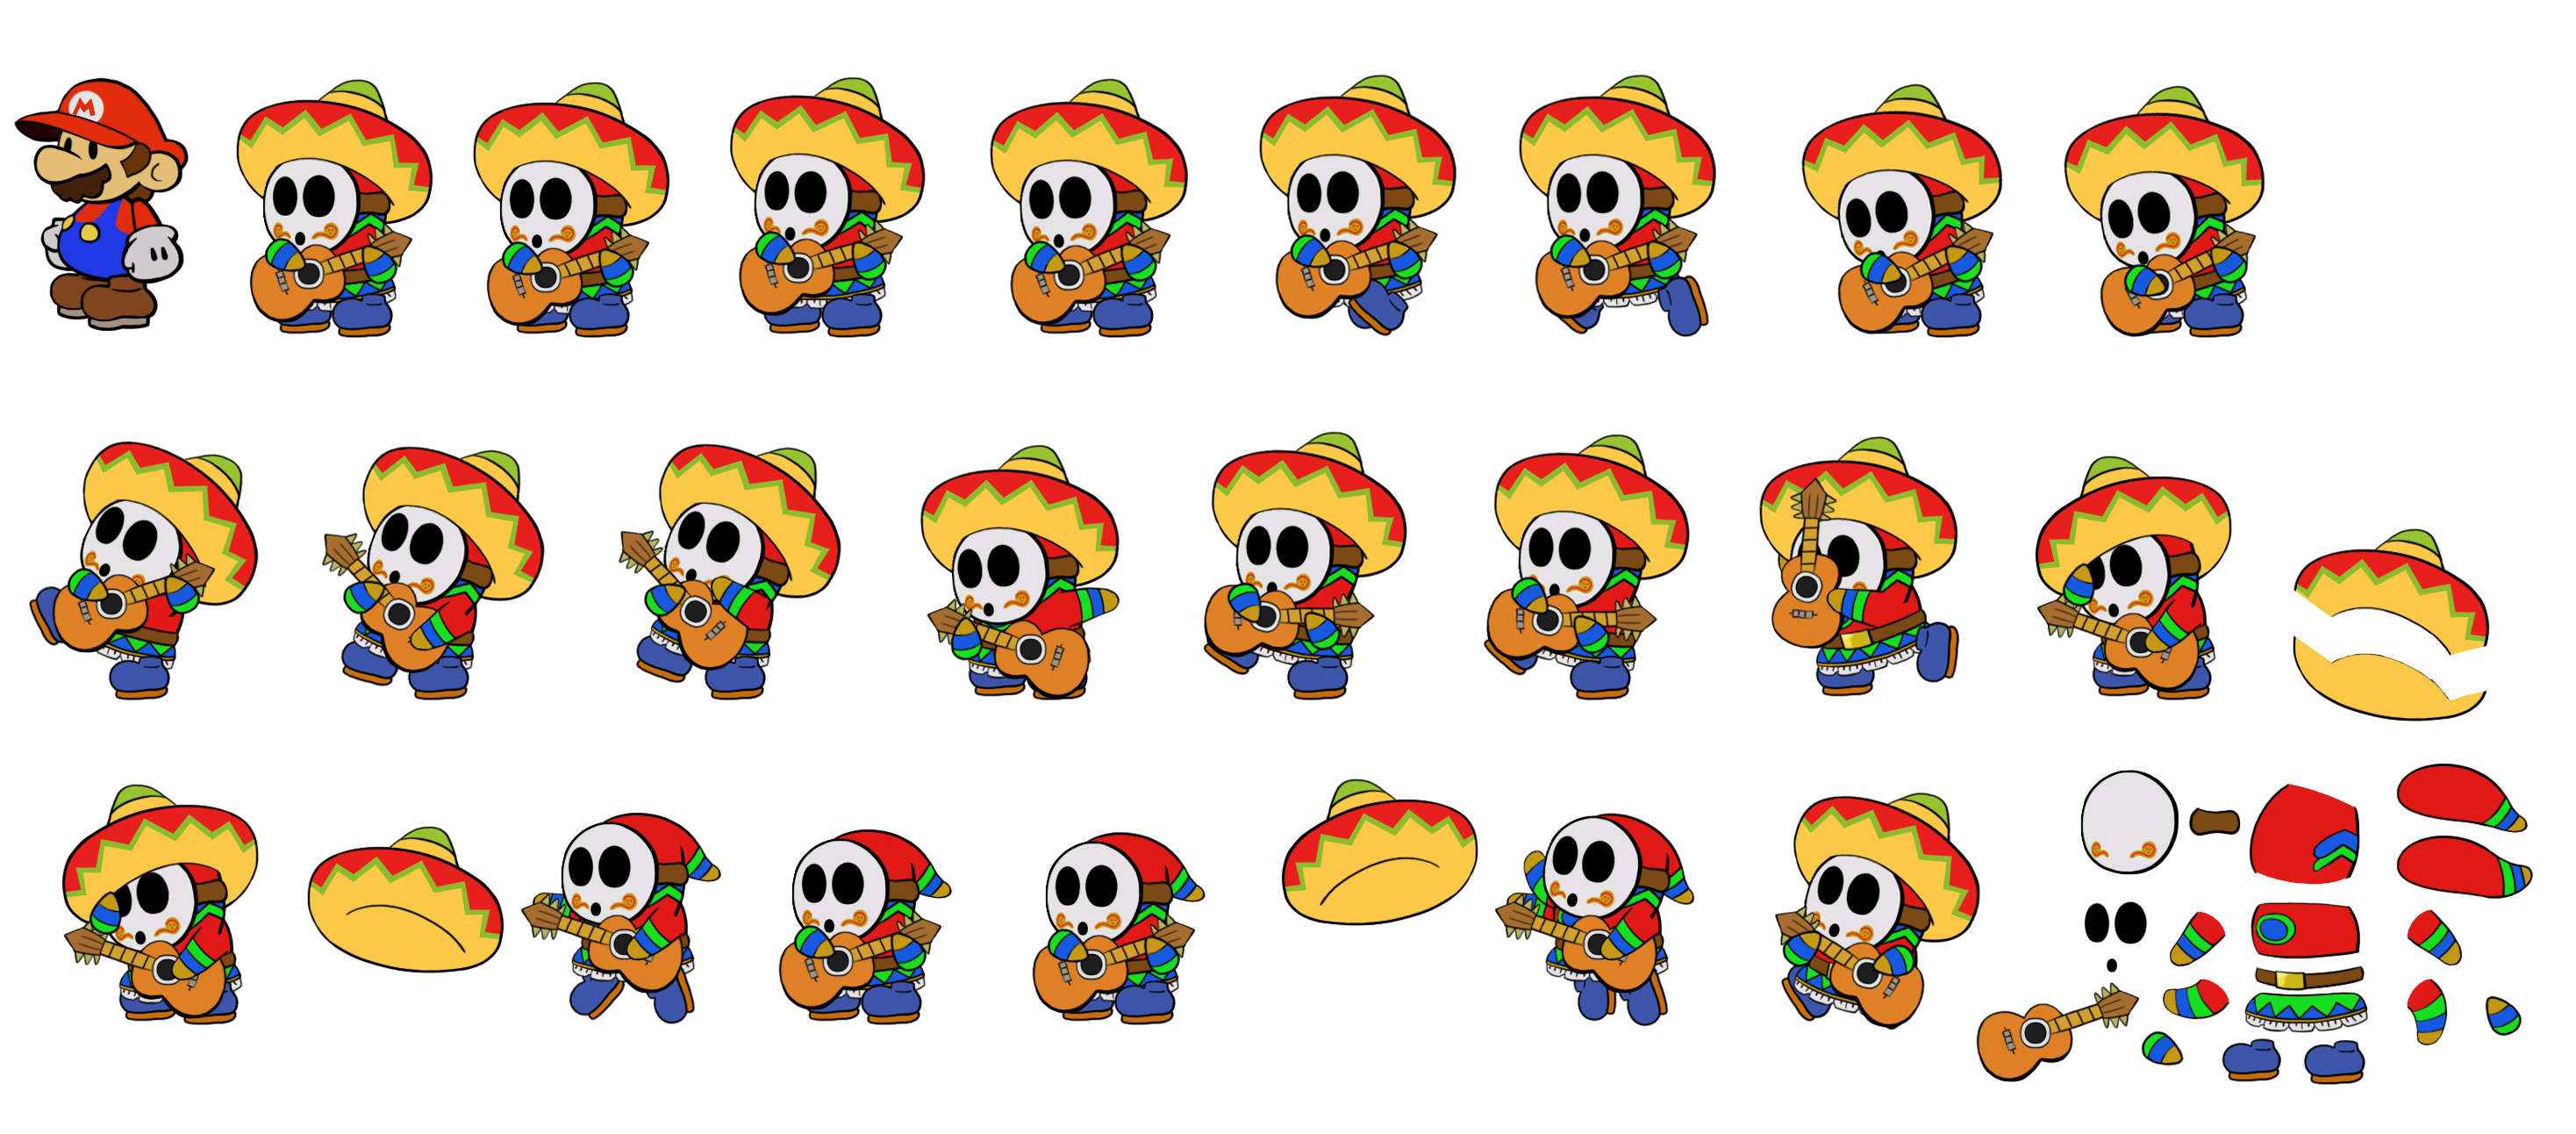 Sombrero Guy (Super Mario Odyssey, Paper Mario-Style)